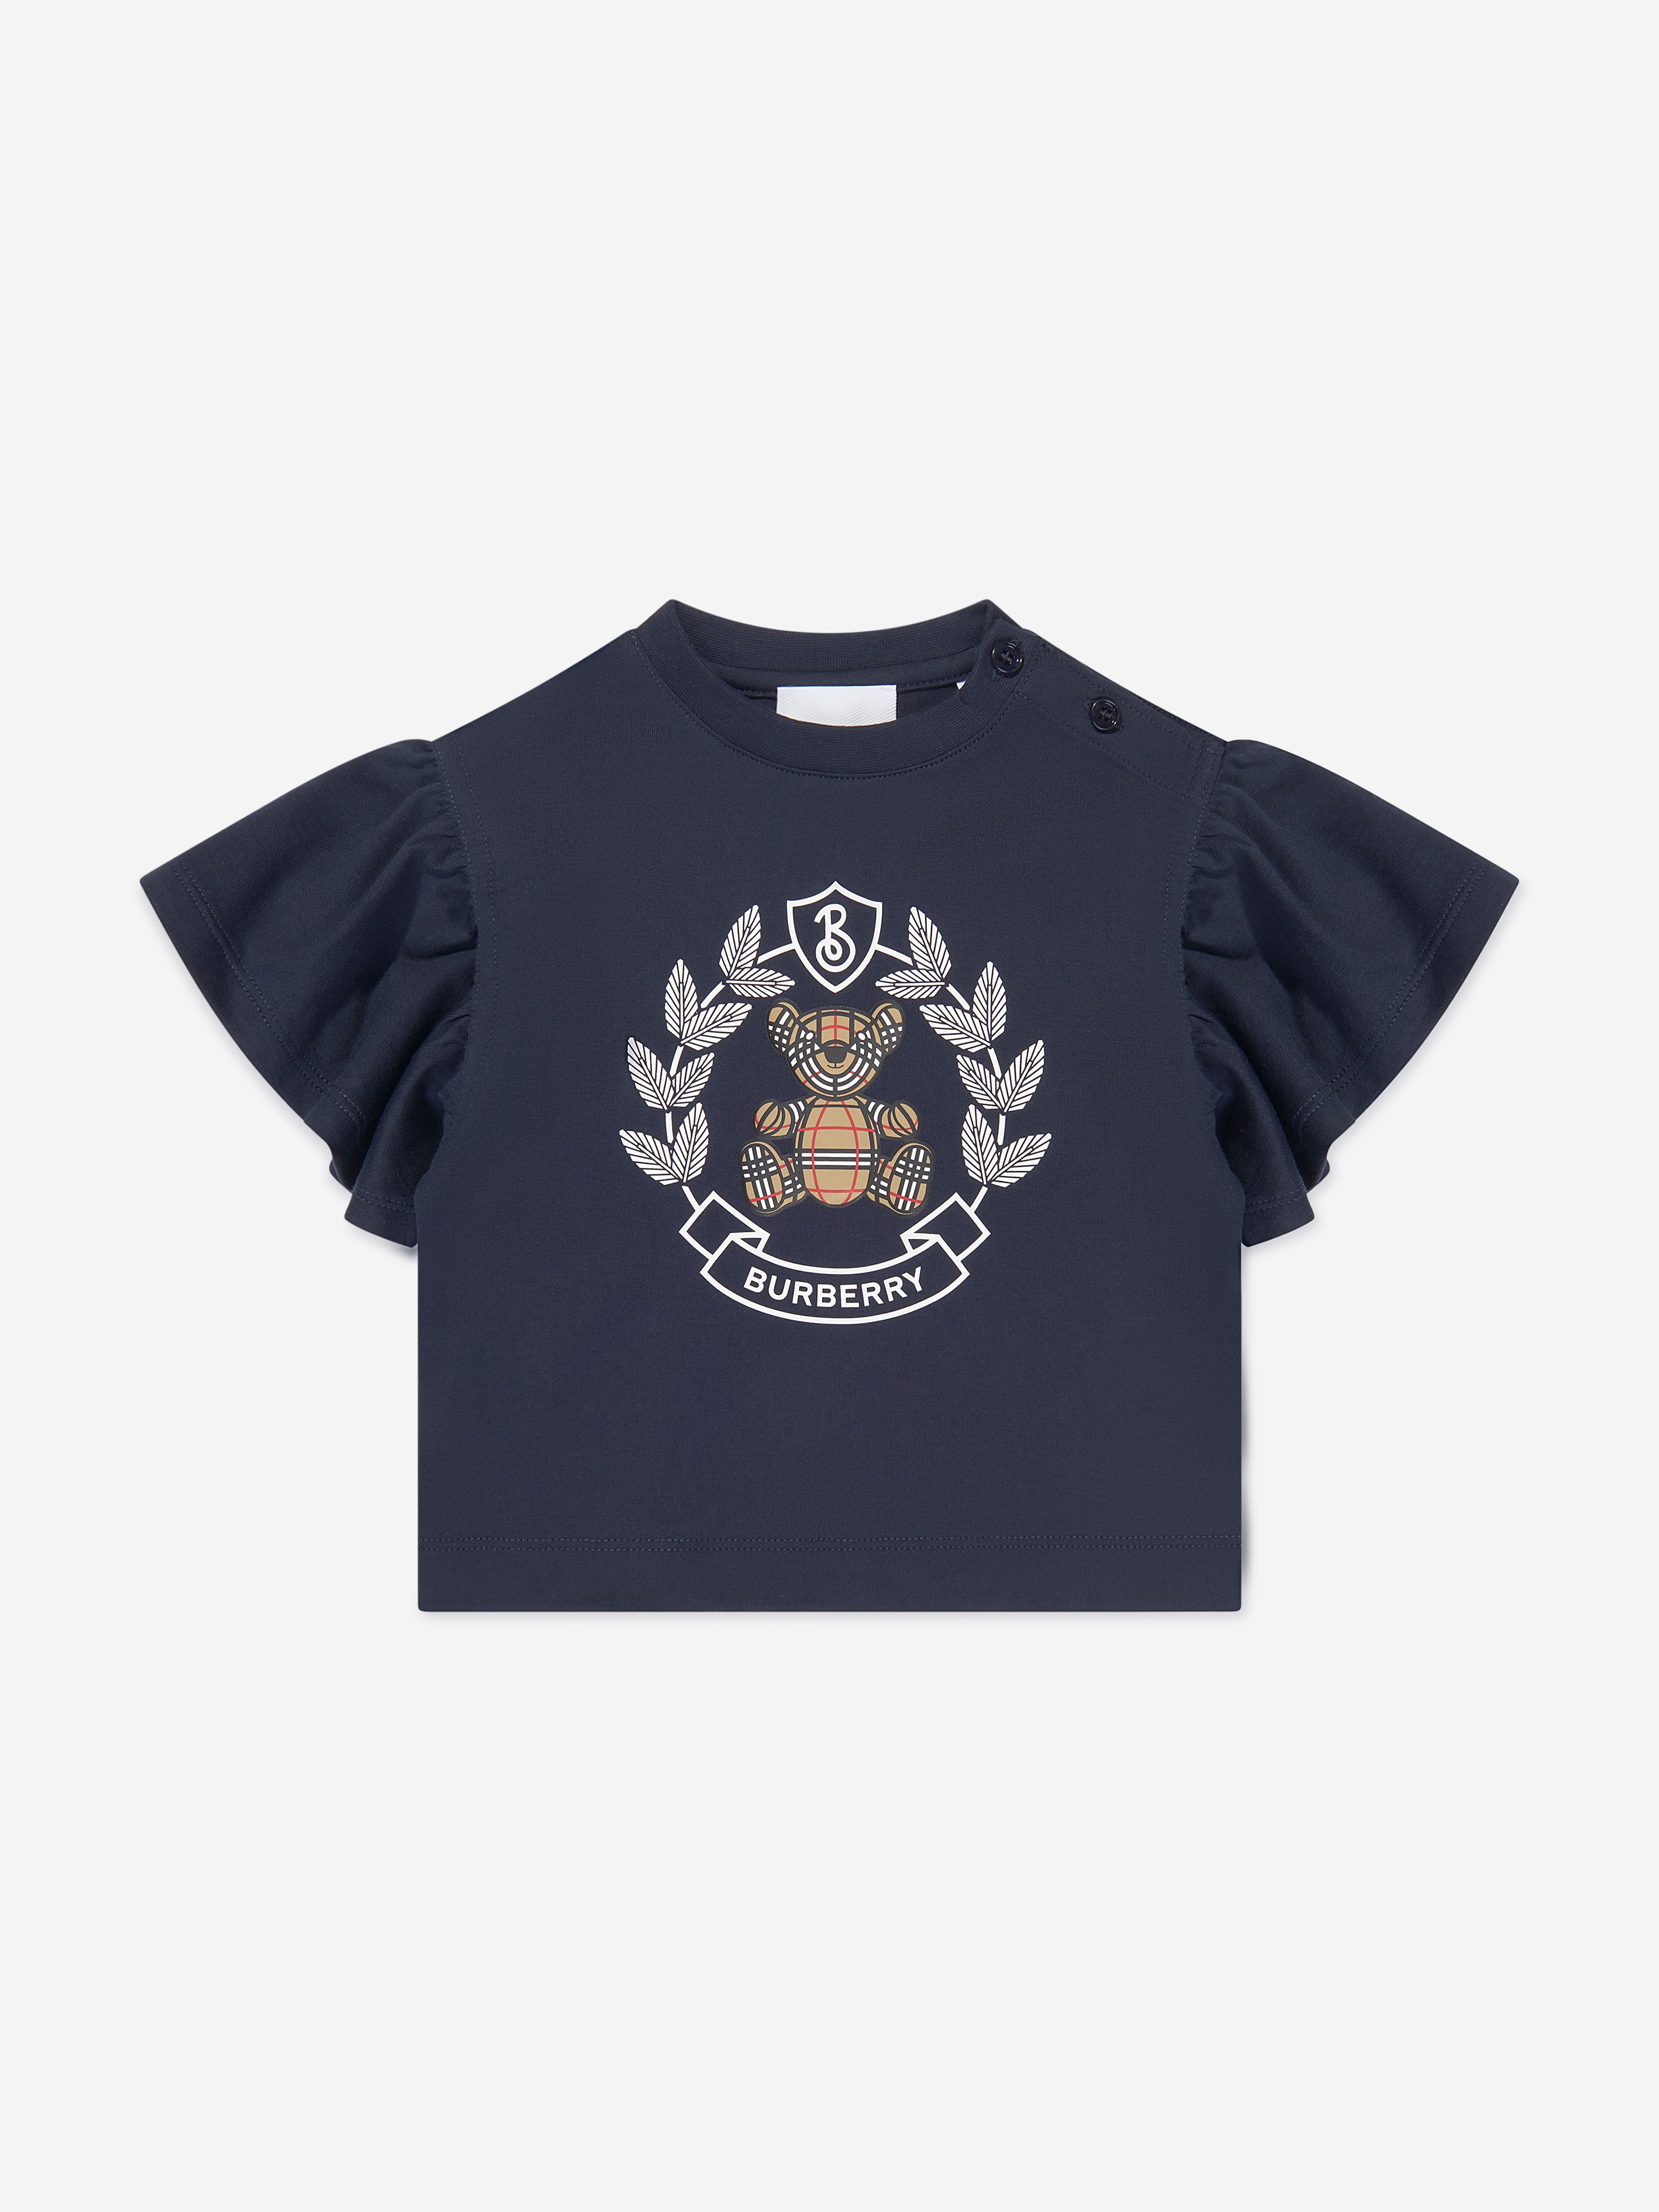 Burberry Baby Girls Blue Cotton Crest T-shirt